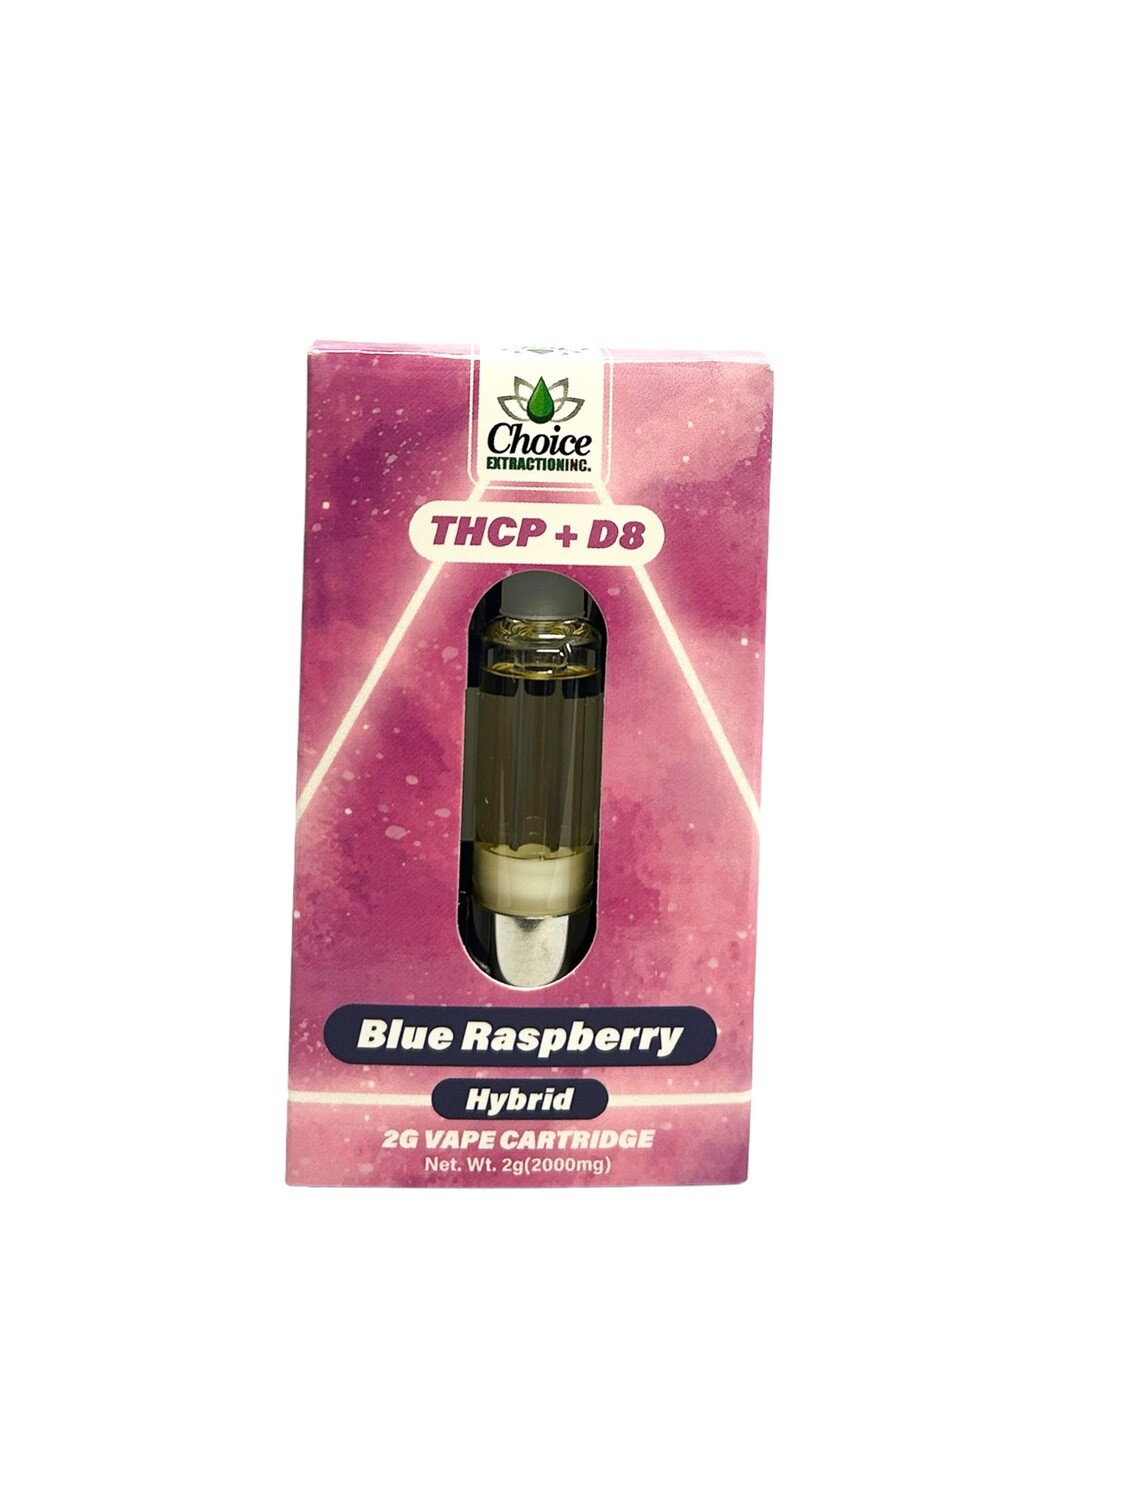 THCP + D8 Vape Cart - Blue Raspberry 2mL - Hybrid